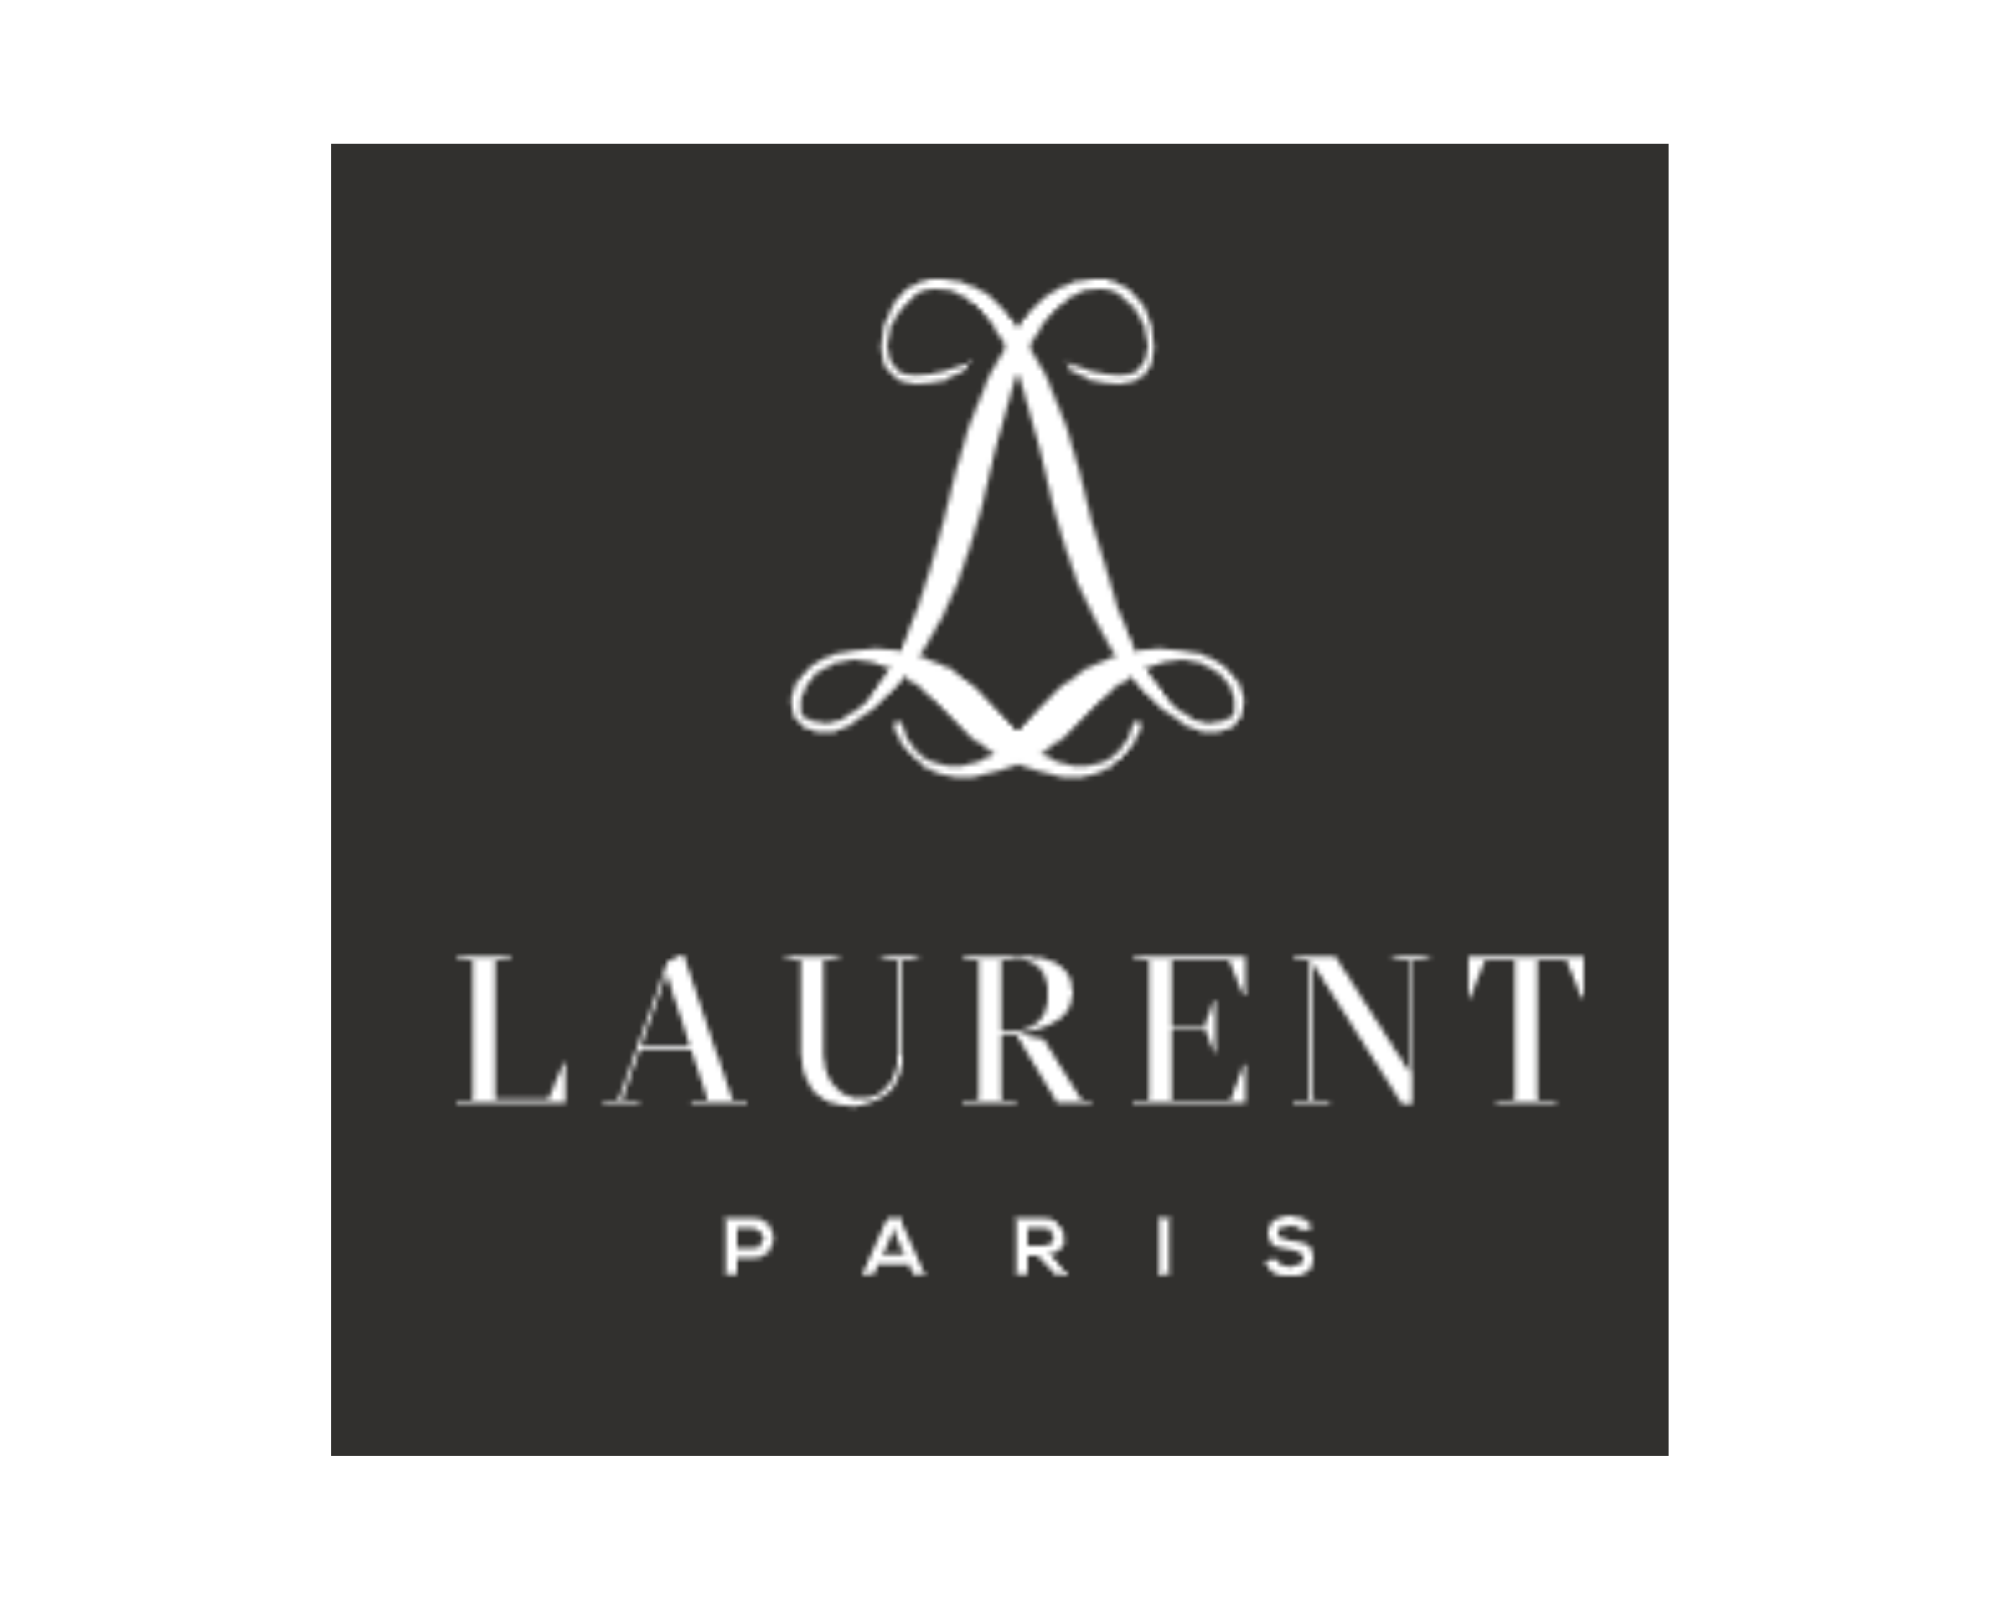 Mathieu Pacaud et Paris Society remportent la concession du Laurent